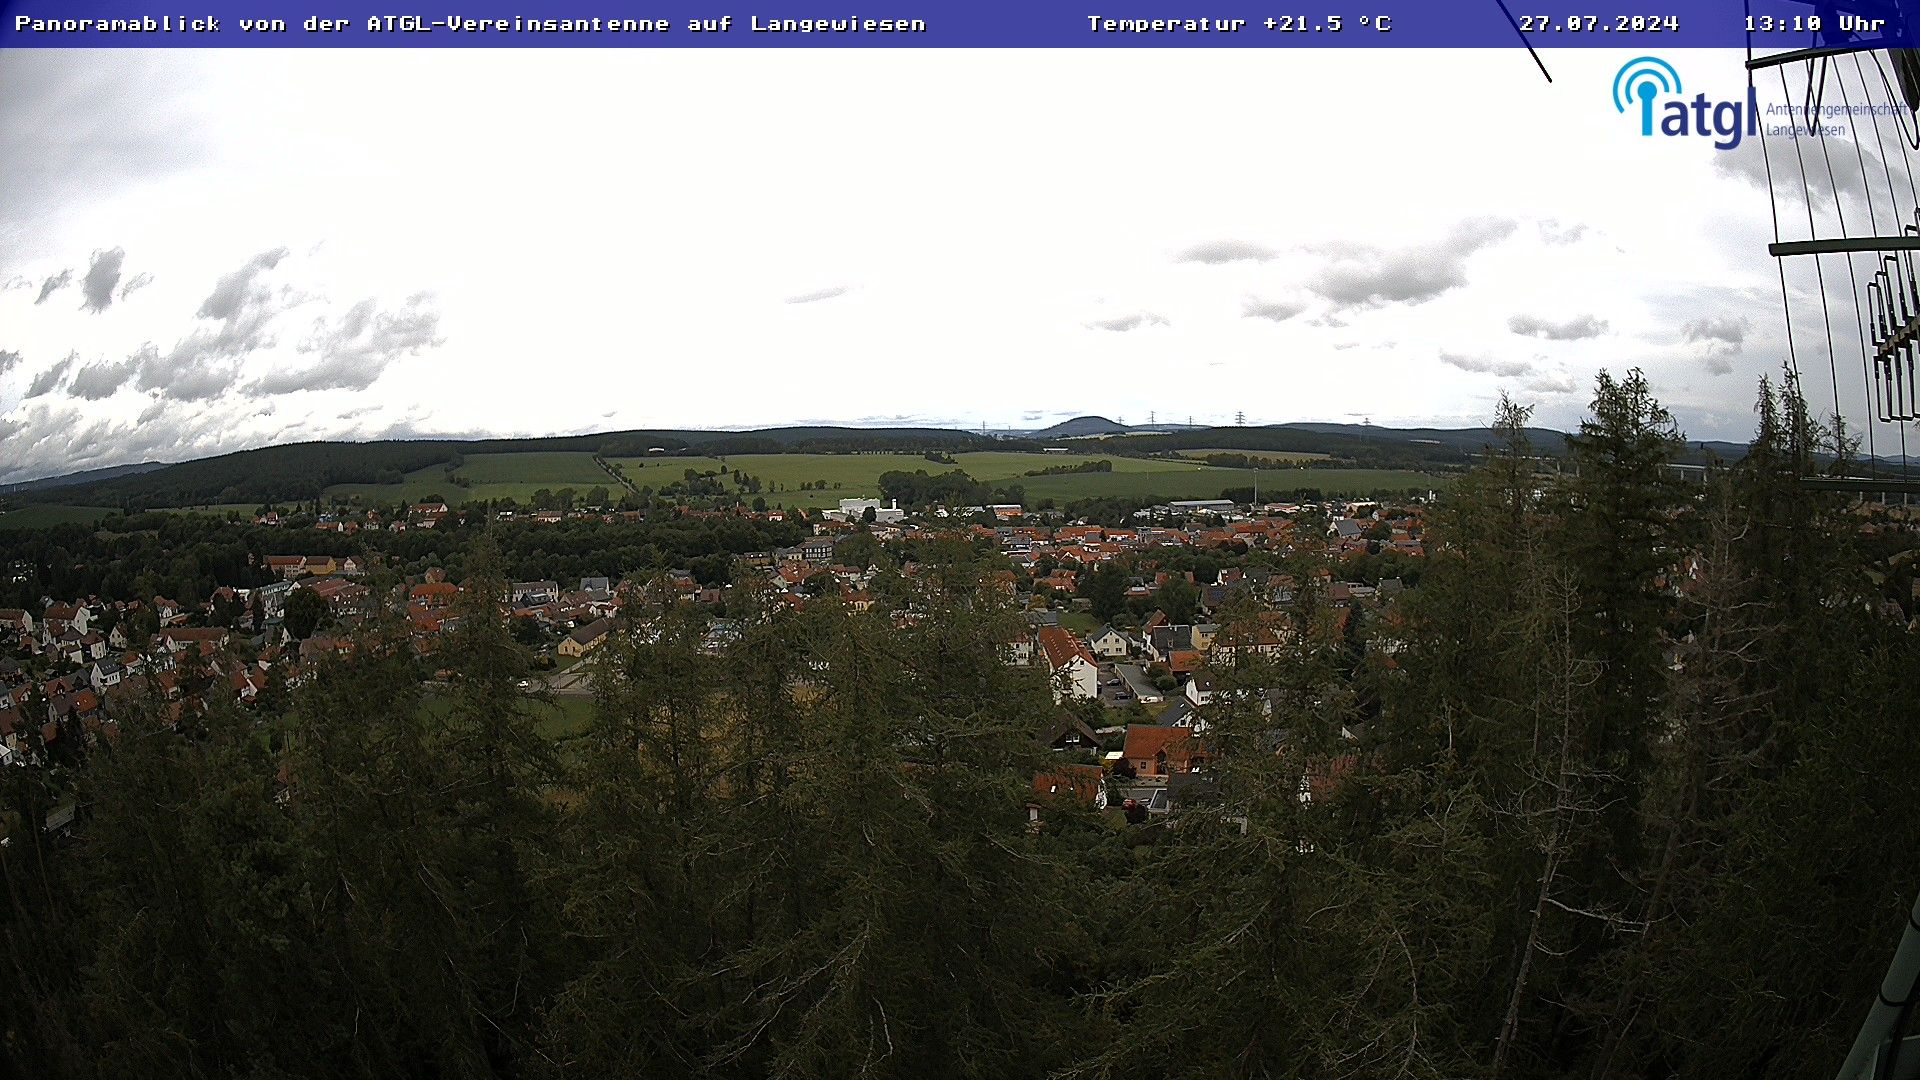 Live - Panoramablick vom Knieberg über Langewiesen